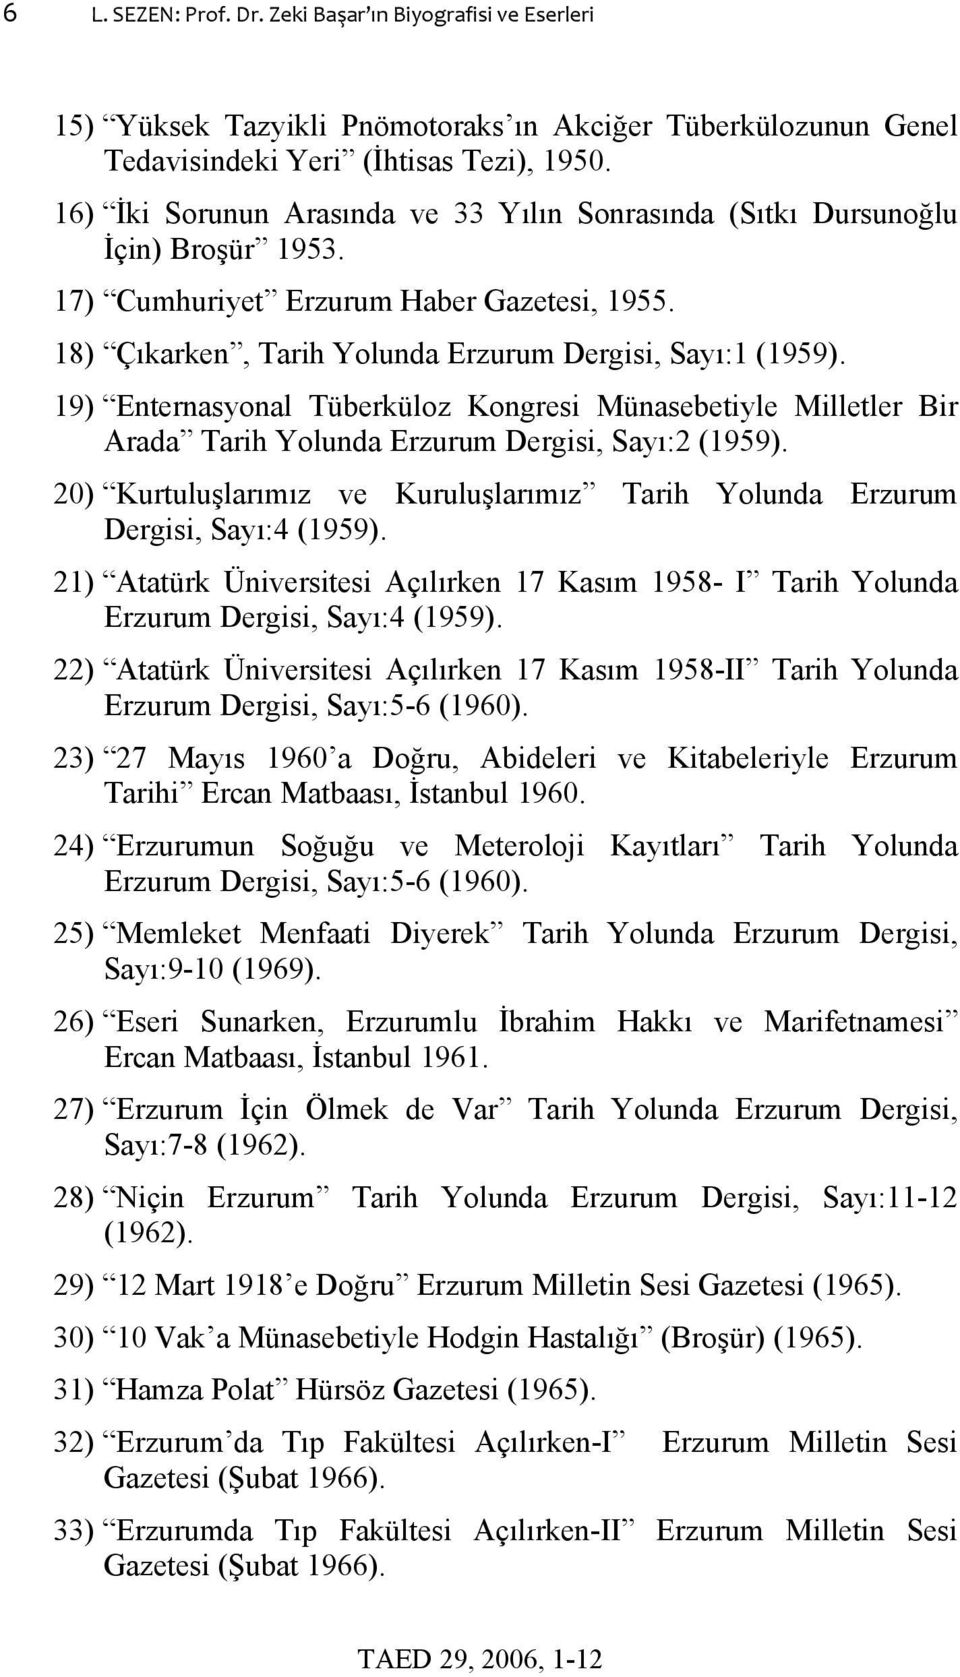 19) Enternasyonal Tüberküloz Kongresi Münasebetiyle Milletler Bir Arada Tarih Yolunda Erzurum Dergisi, Sayı:2 (1959).